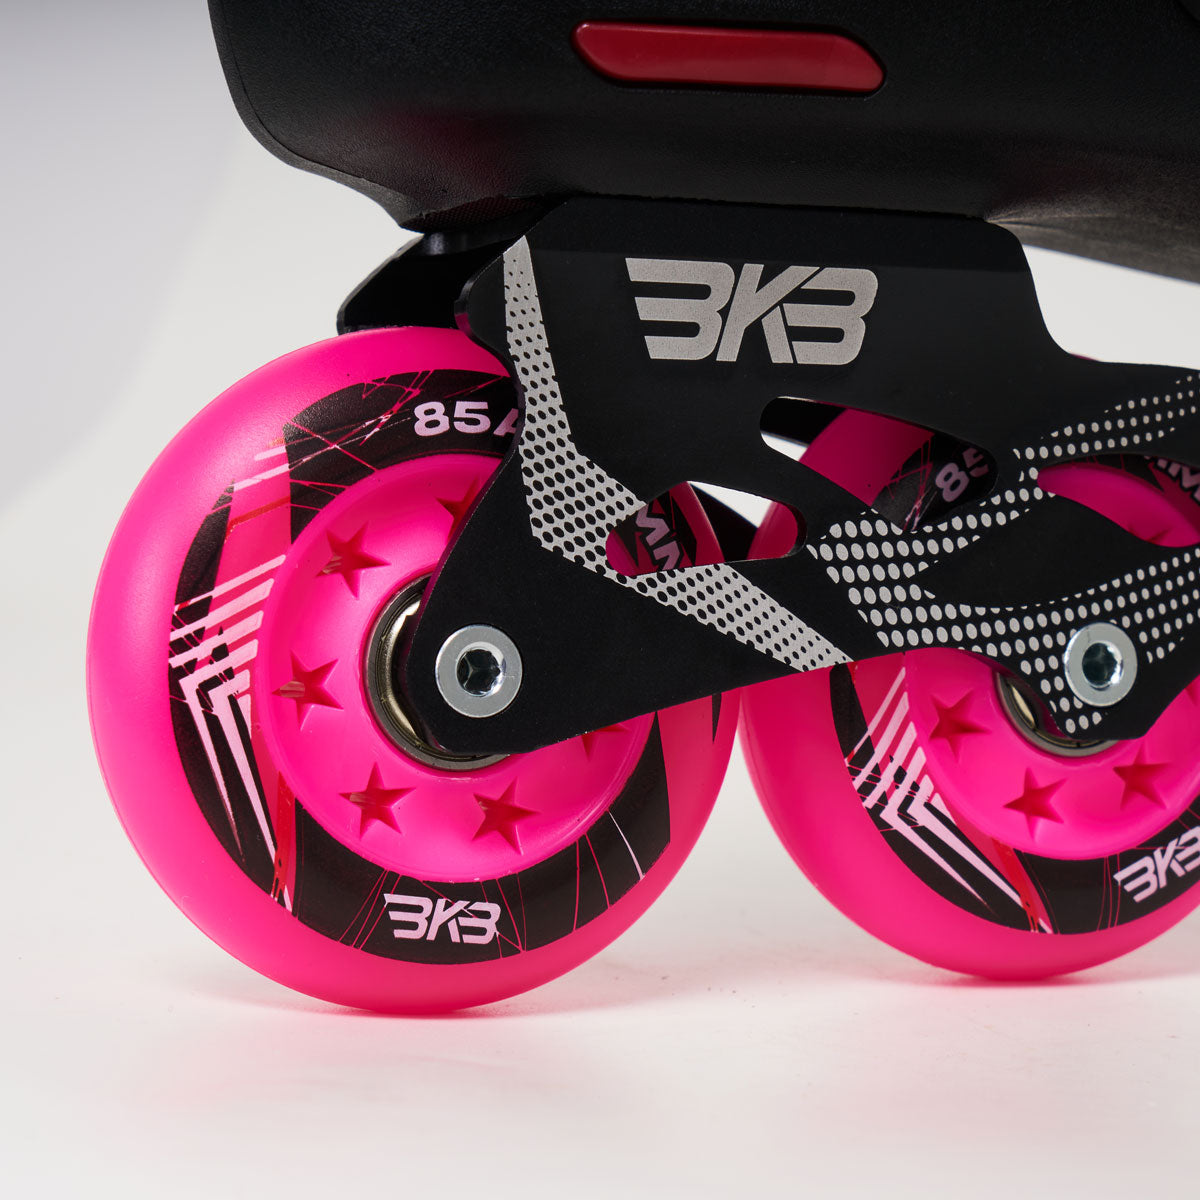 Flying Eagle (BKB) B5S+ Skates - Pink